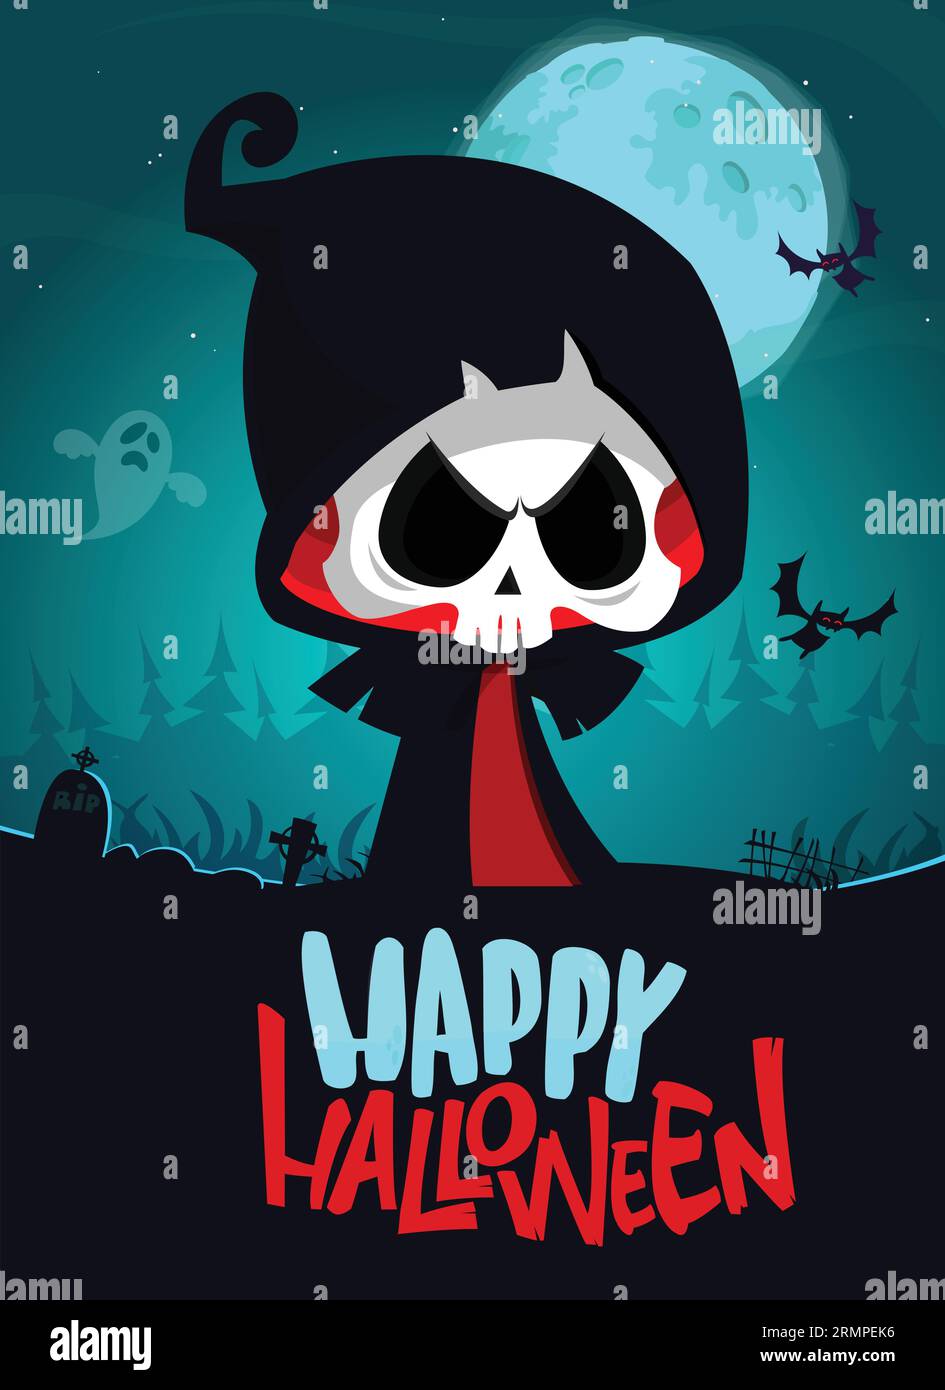 Grimmige Reaper-Zeichentrickfigur mit Sense. Halloween lustige Totenskelett Illustration. Gestaltung von Paketen, Postern oder Grußeinladungen. Vektor isoliert Stock Vektor